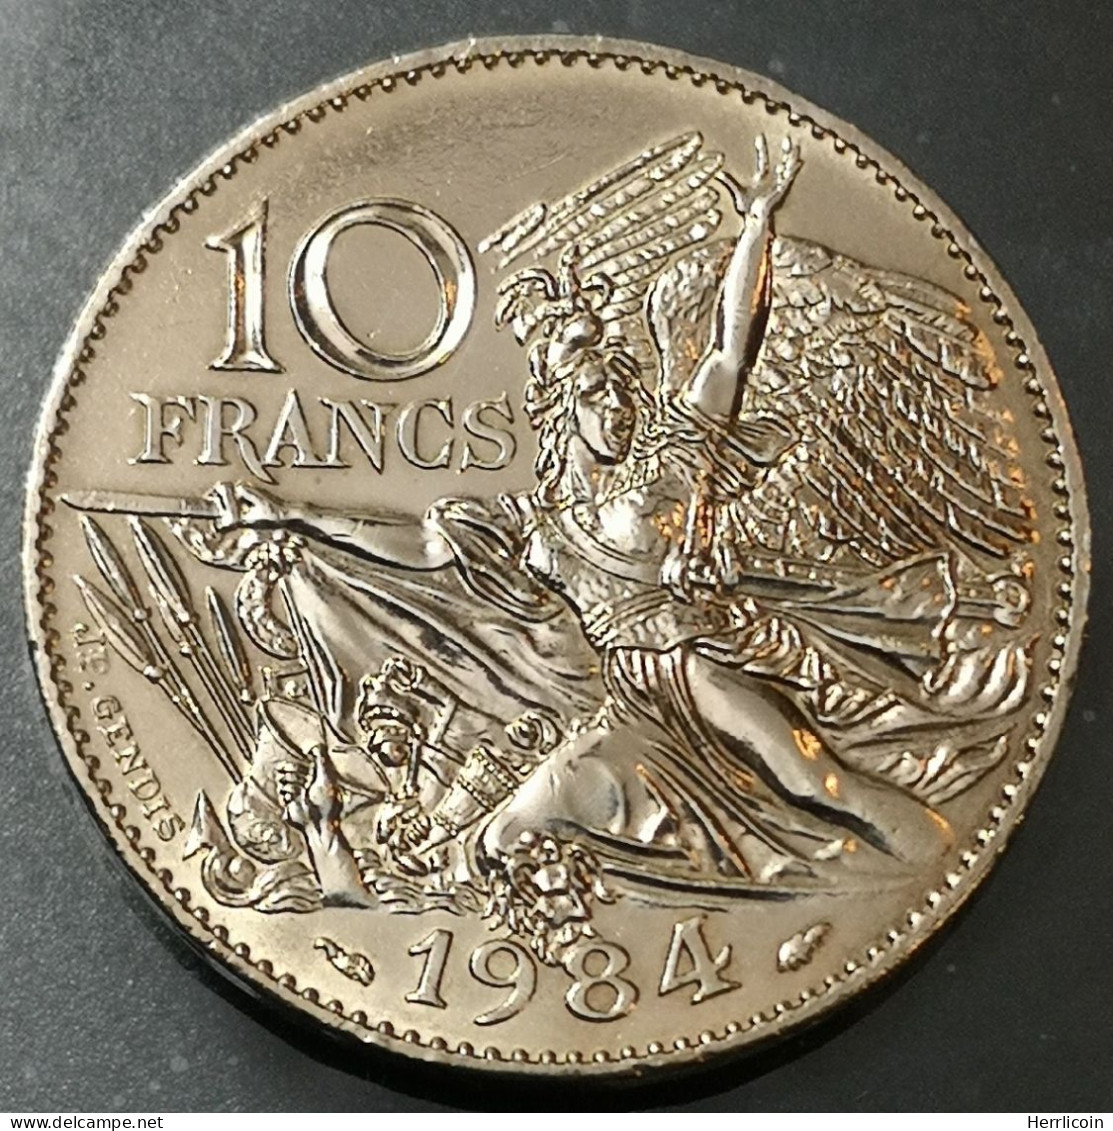 Monnaie France - 1984 - 10 Francs François Rude - Tranche A - Commemoratives